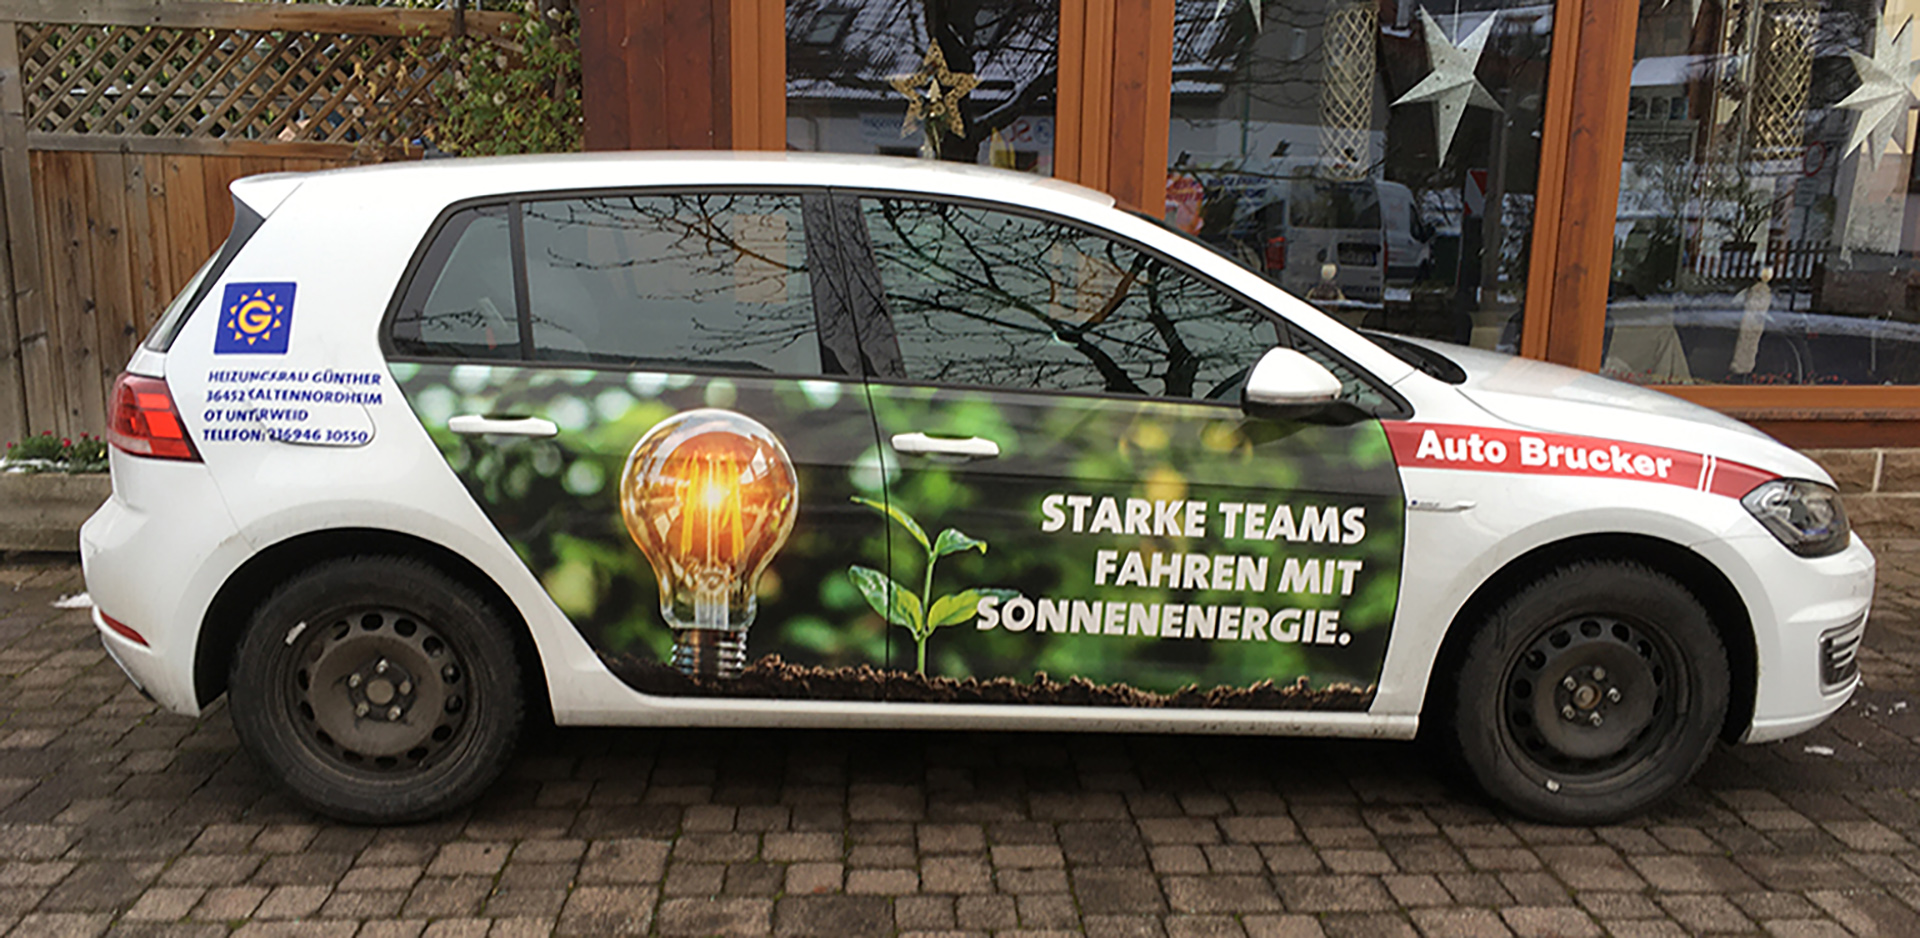 Ein weißes E-Fahrzeug mit einem Bild auf den Türen. Das Bild zeigt eine Glühbirne und die Aufschrift "Starke Teams fahren mit Sonnenenergie."